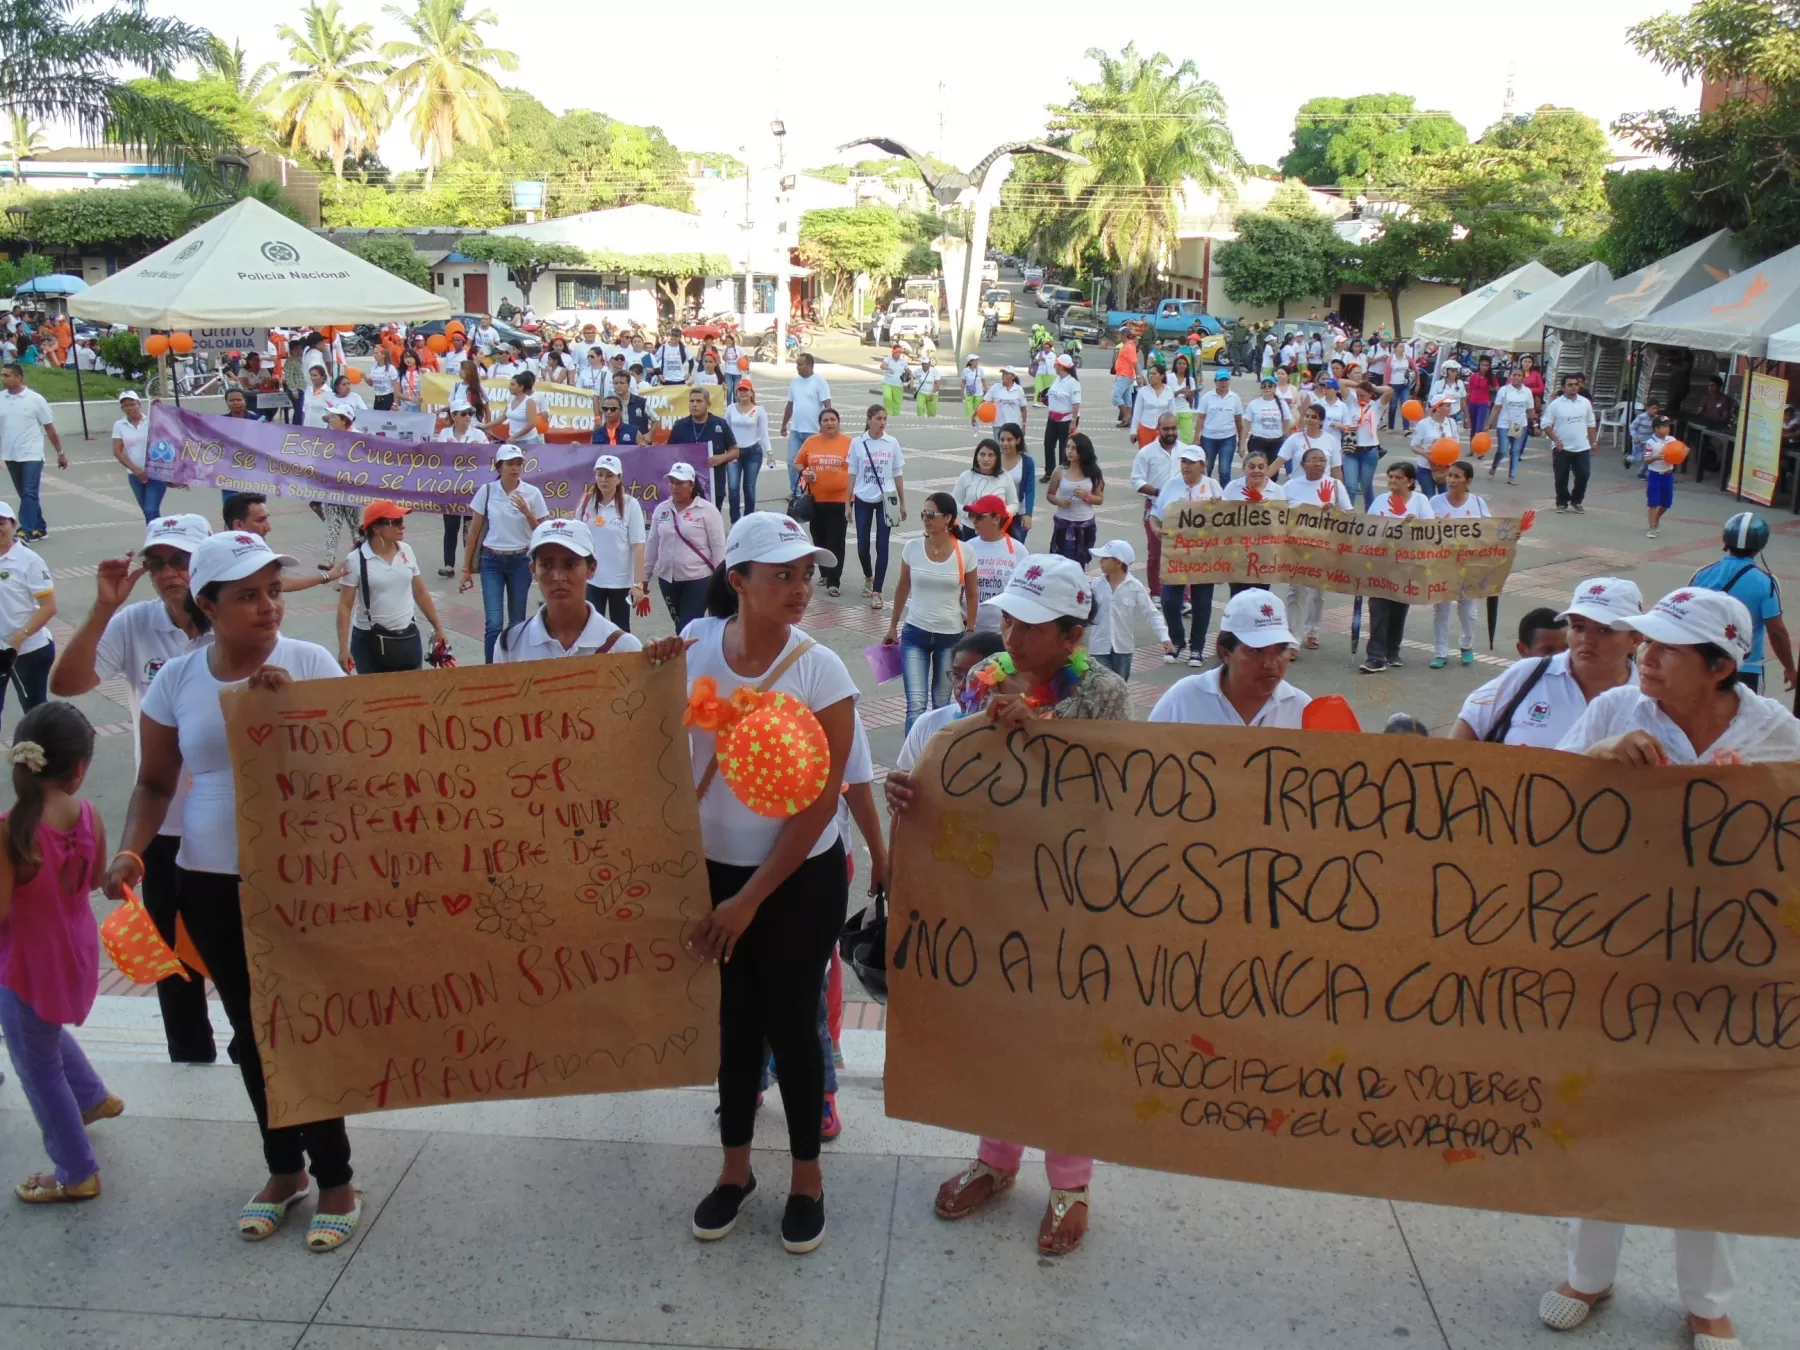 Araucanos apoyaron la marcha de la camisa blanca, como forma de manifestarse contra la violencia hacia las mujeres.